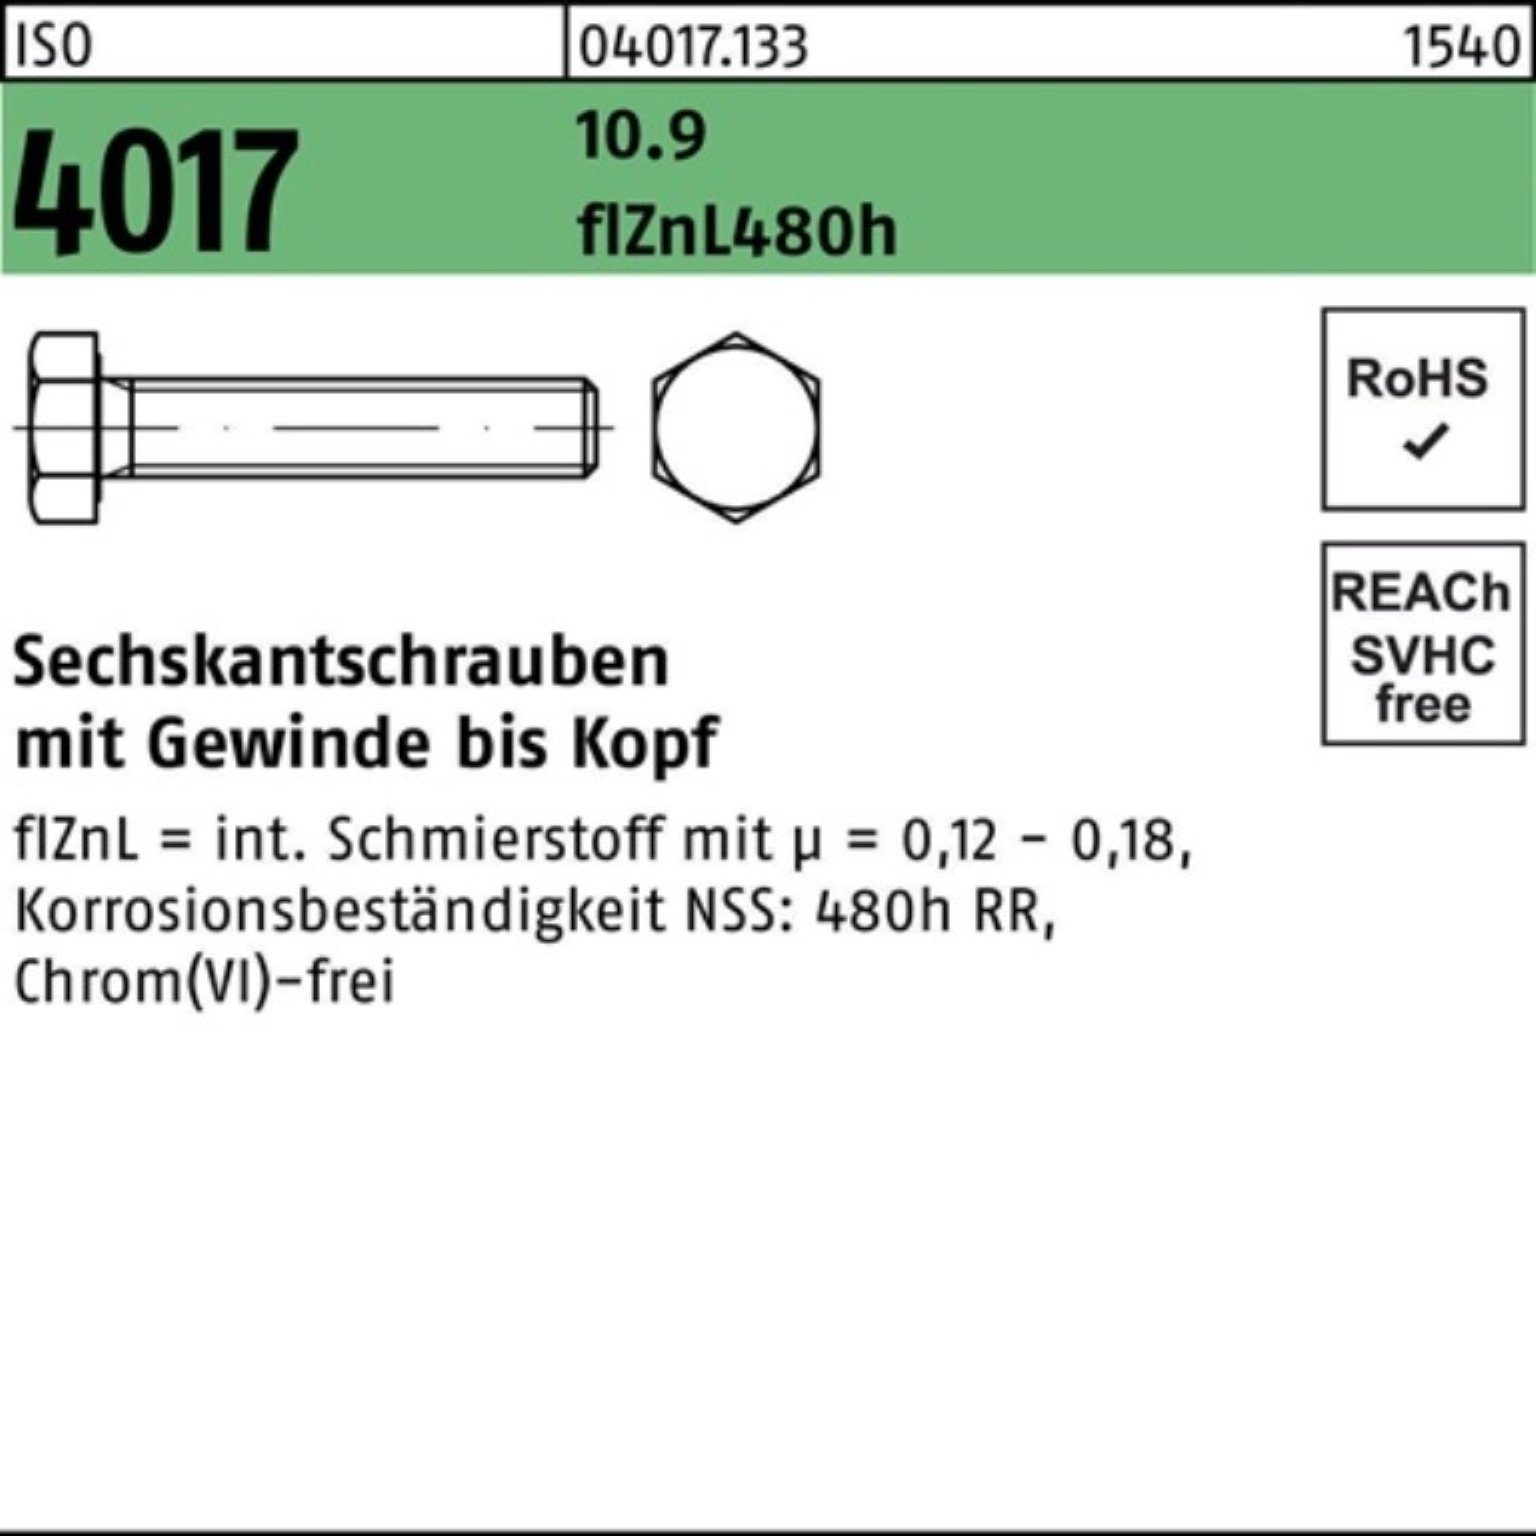 Sechskantschraube 20 Bufab M6x 4017 ISO 60 10.9 zinklamellenb. VG Sechskantschraube 200er Pack